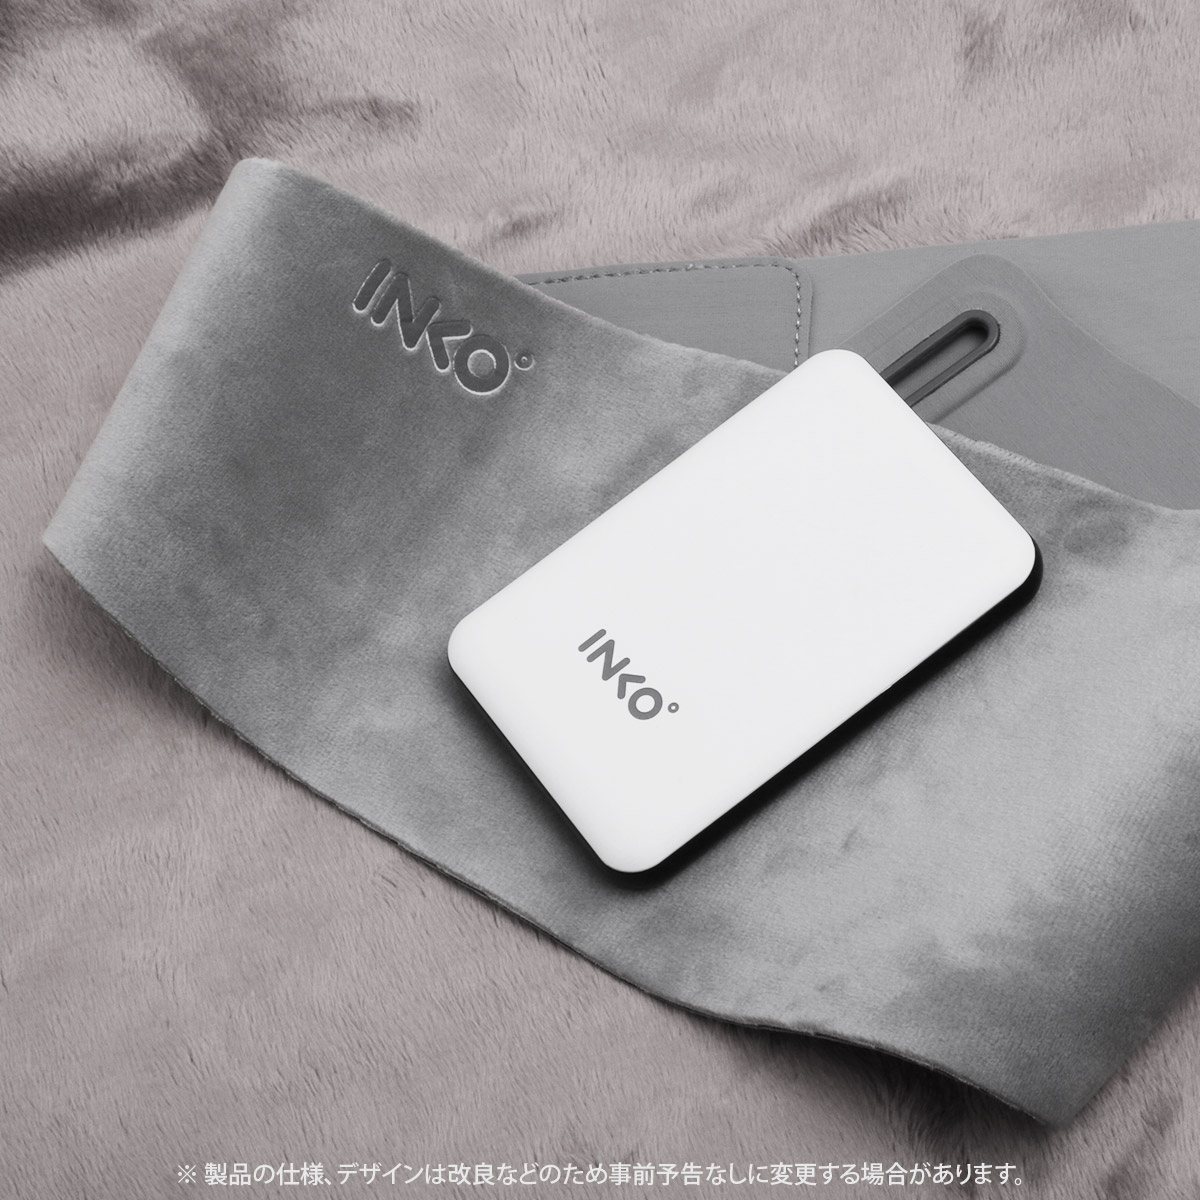 INKO ヒーティングベルト HARAMAKI 2 - 【公式サイト】インクで温める